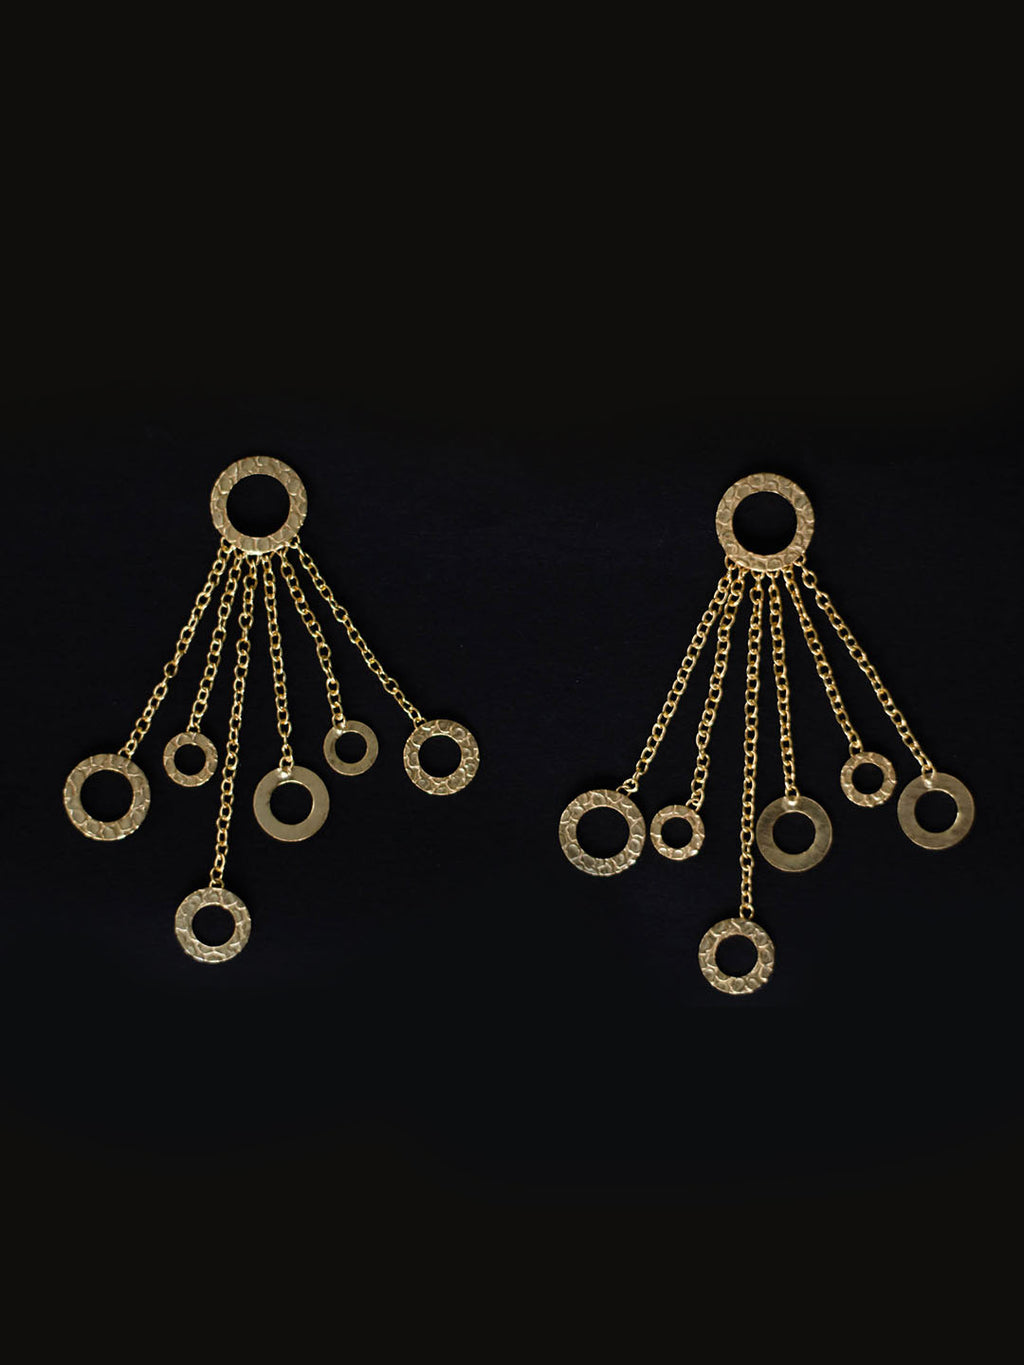 Gold Plated Ring Dangler Earrings, Earrings - Shopberserk